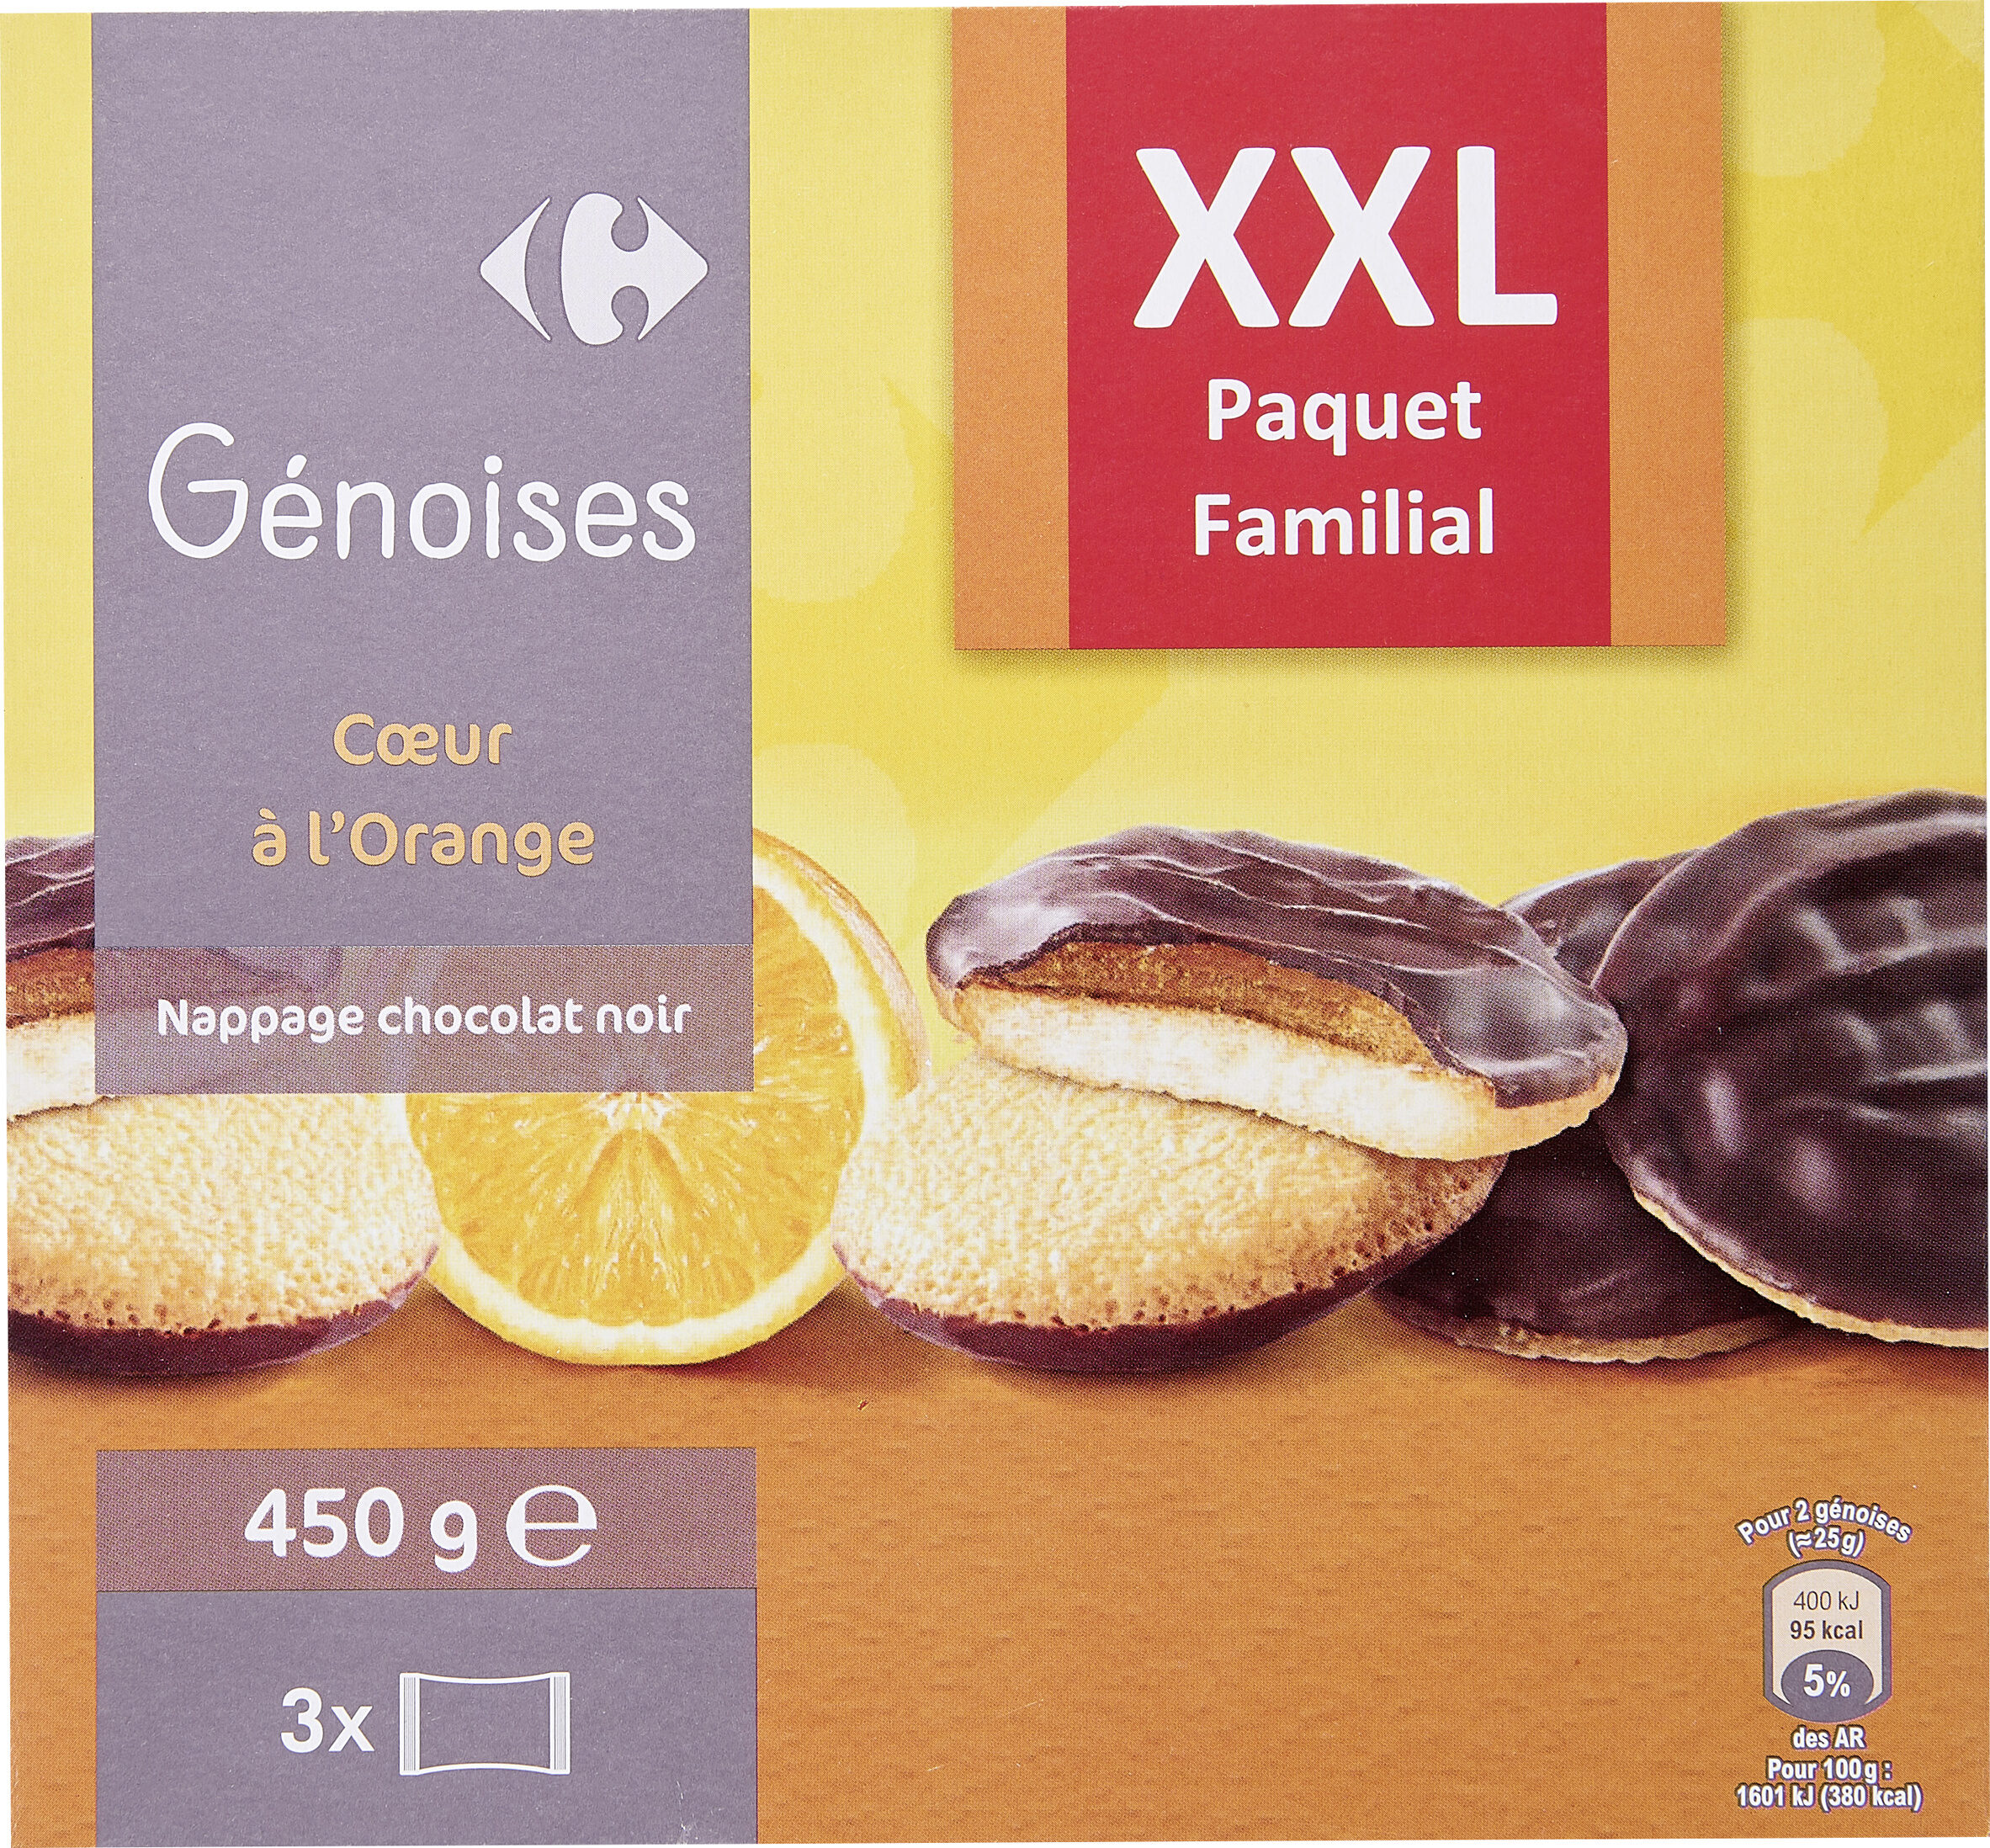 Génoises Coeur à l'orange nappage chocolat noir - Product - fr